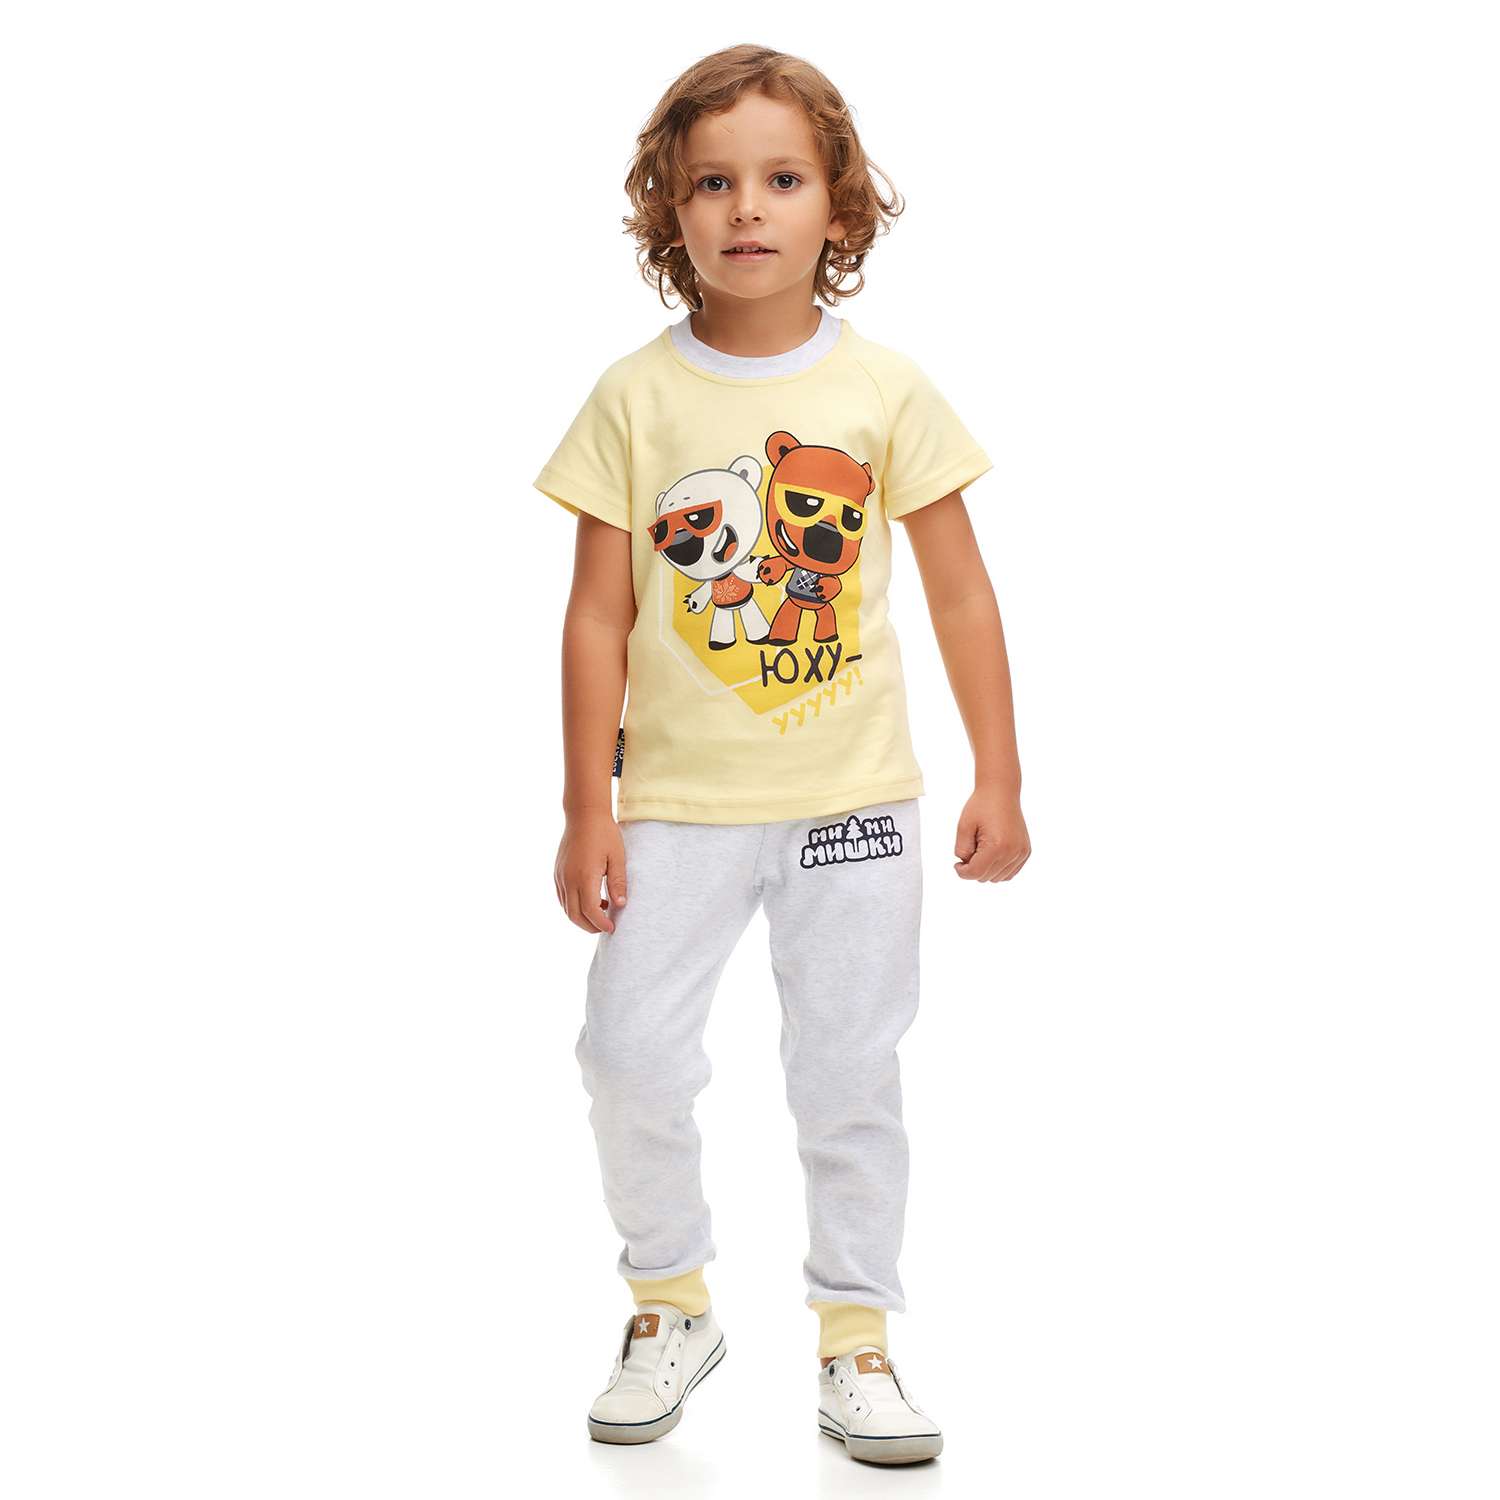 Пижама Lucky Child 70-405/0-2/желтый - фото 2